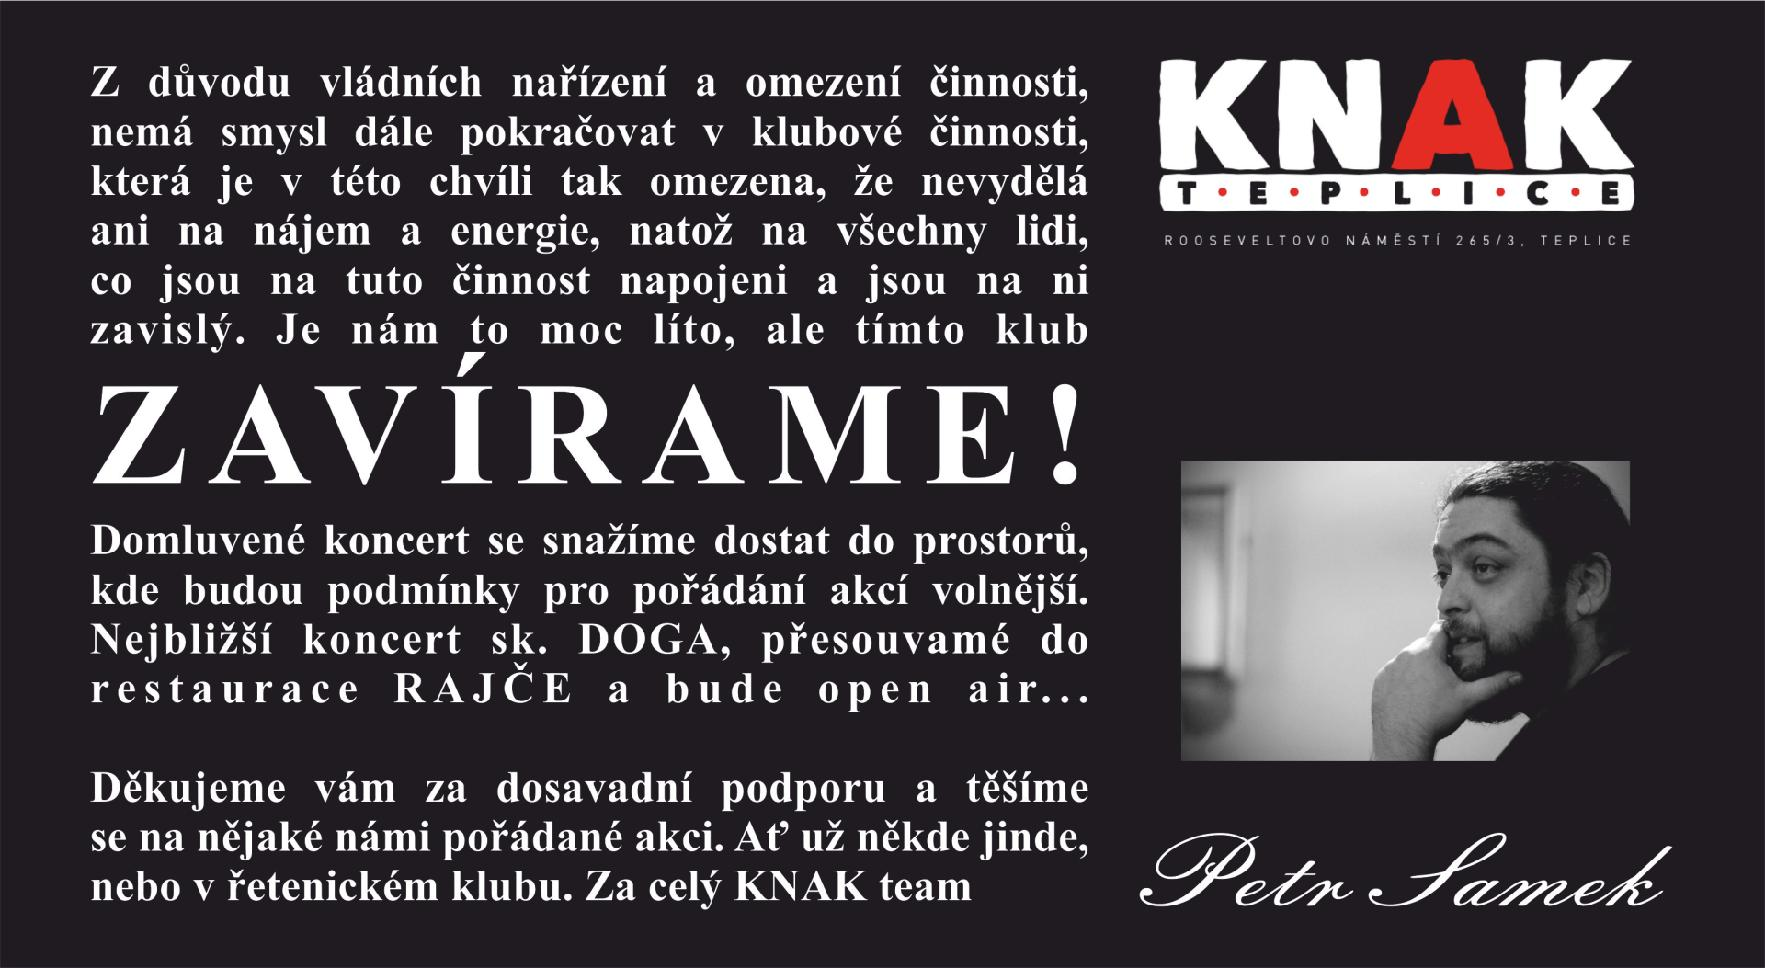 Teplický klub KNAK zavírá, zdroj: Facebook Knak Teplice